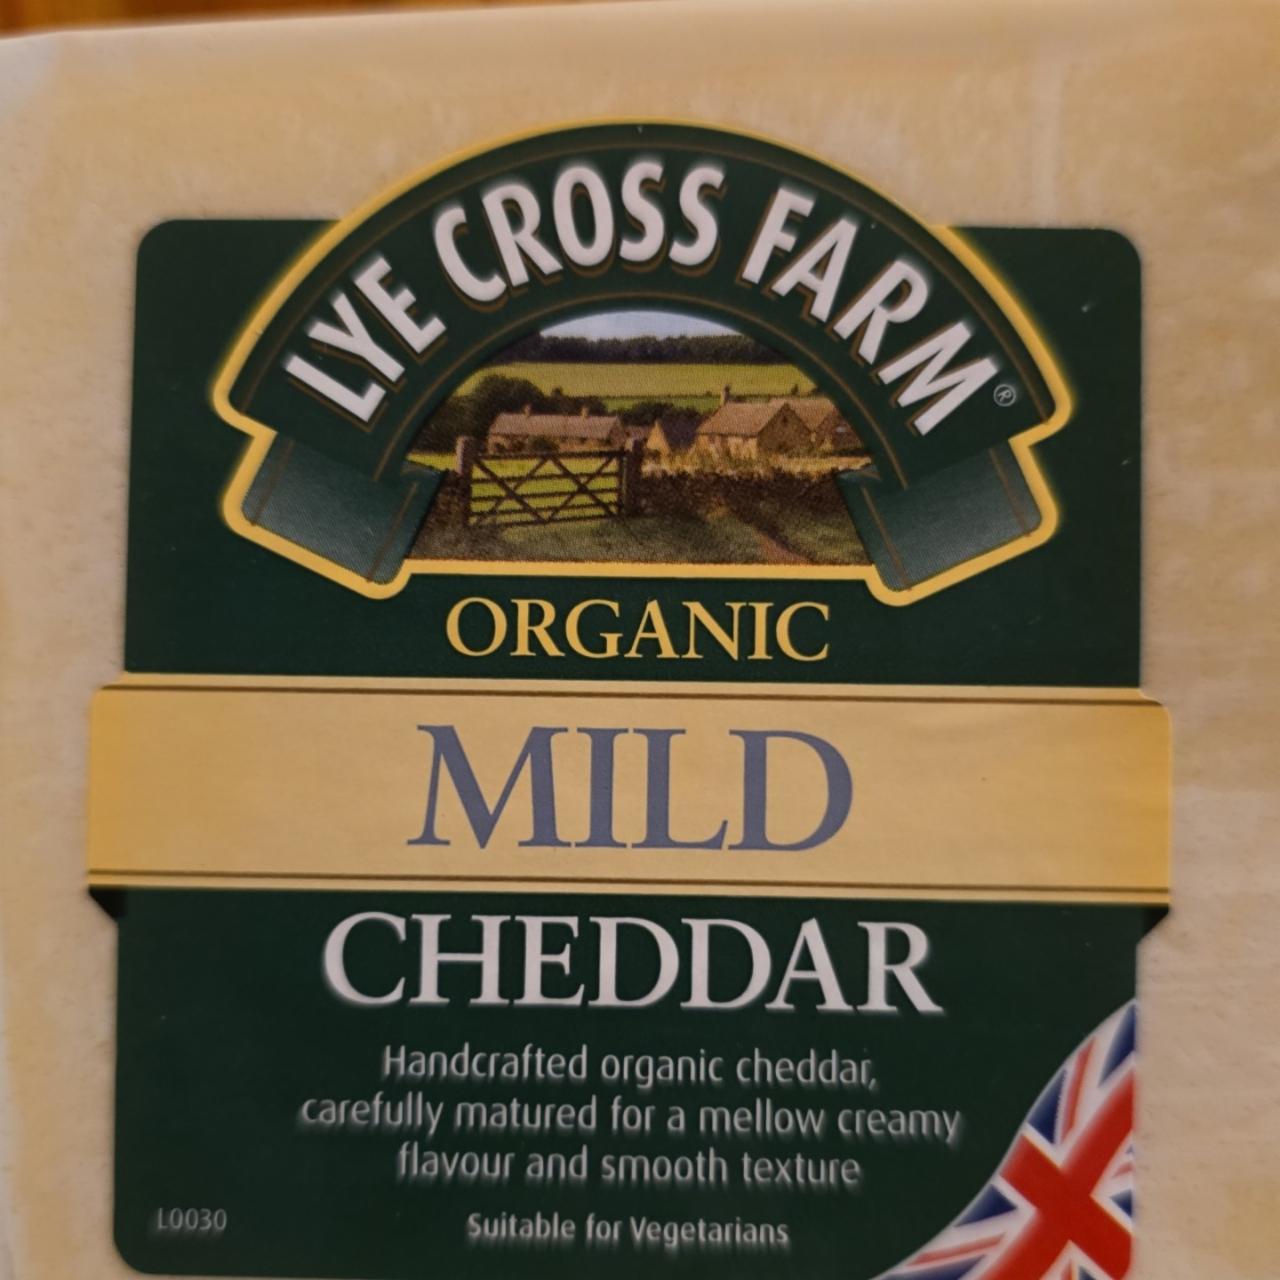 Fotografie - Organic Mild Cheddar Lye Cross Farm